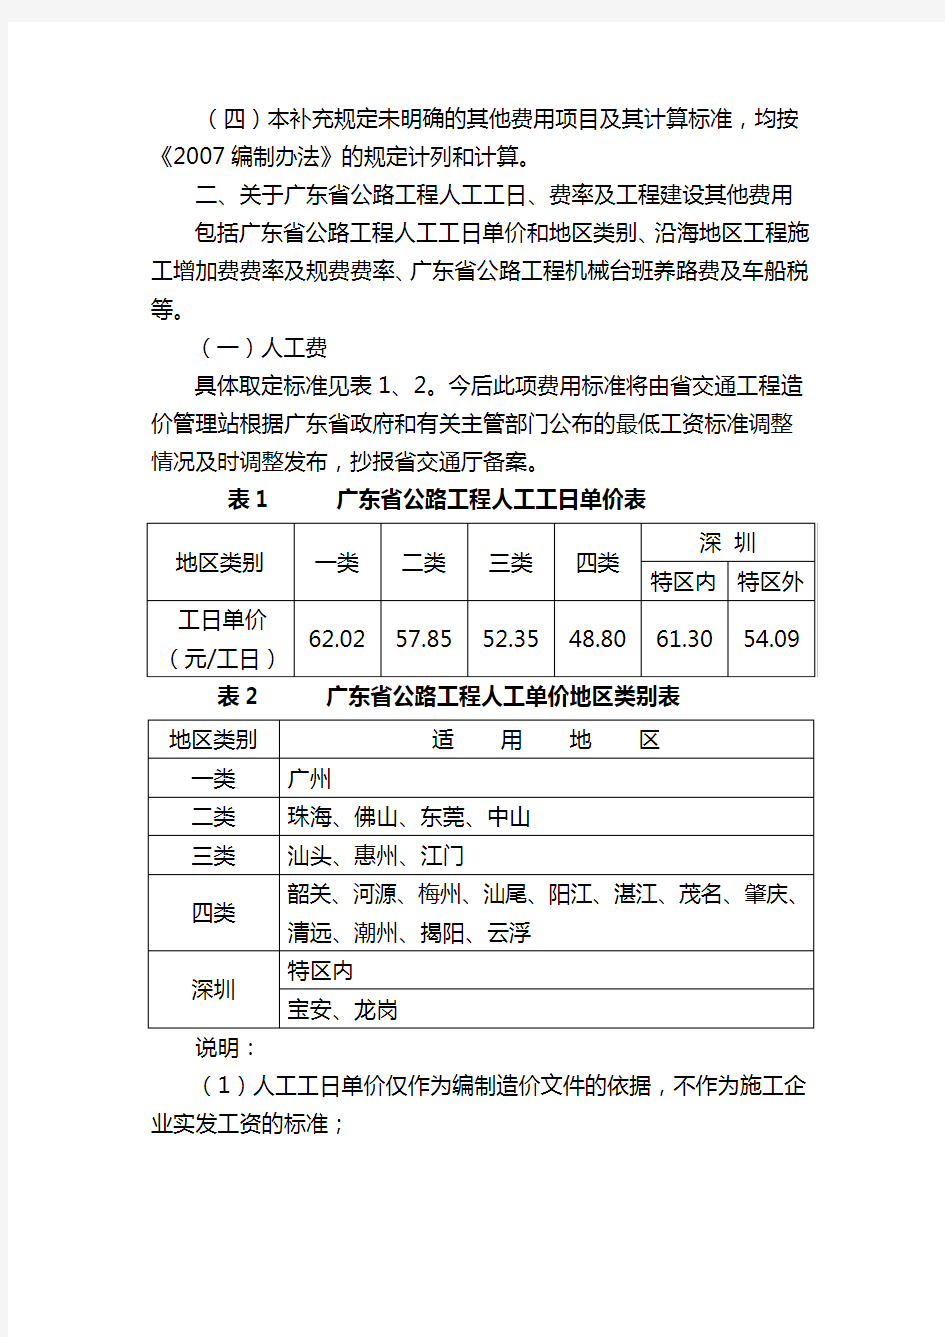 【交通运输】广东省执行交通部公路基本建设工程概算预算编制办法的补充规定